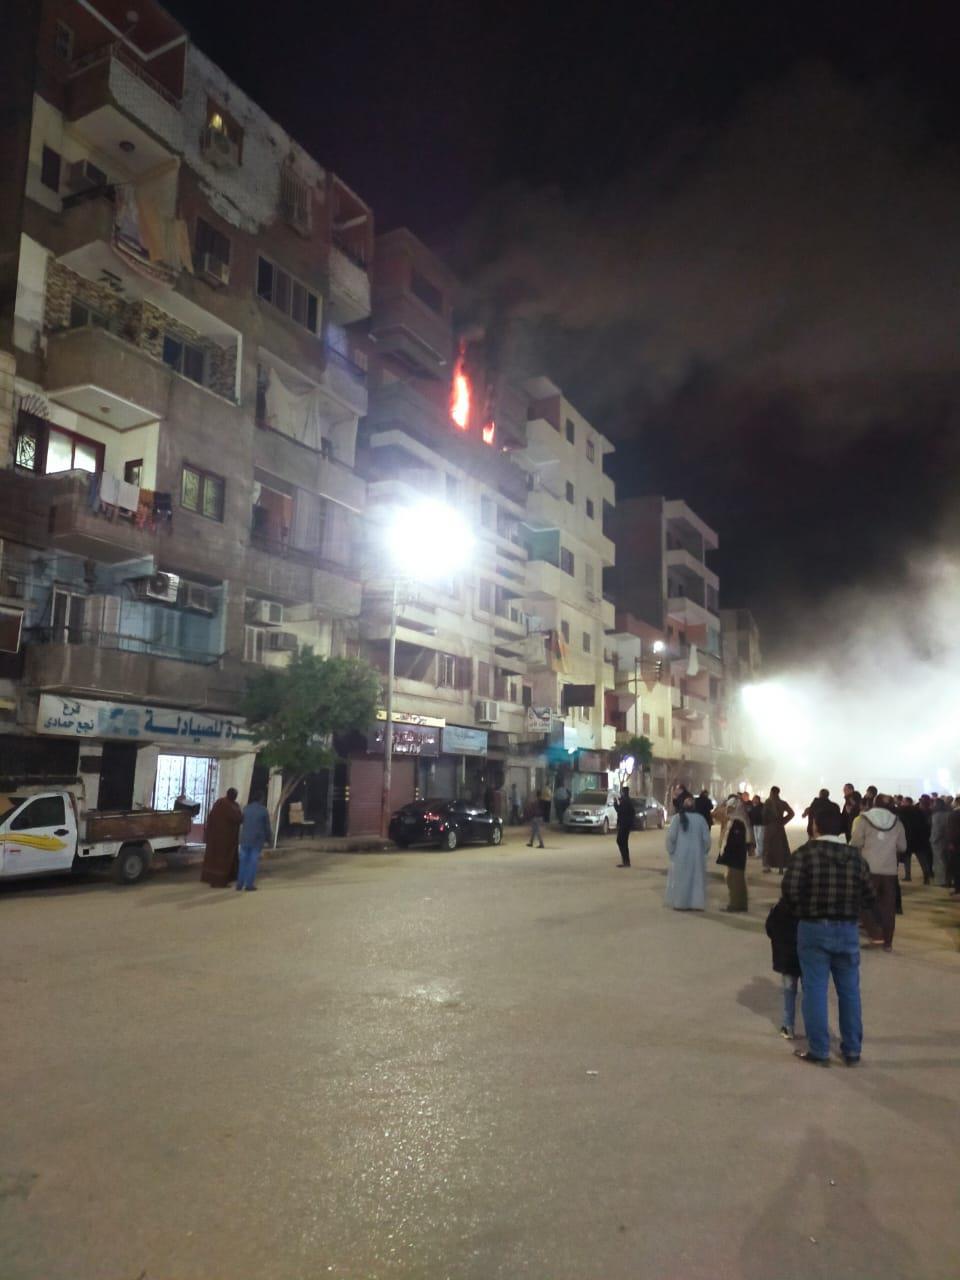  حريق نشب في وحدة سكنية بمدينة نجع حمادي